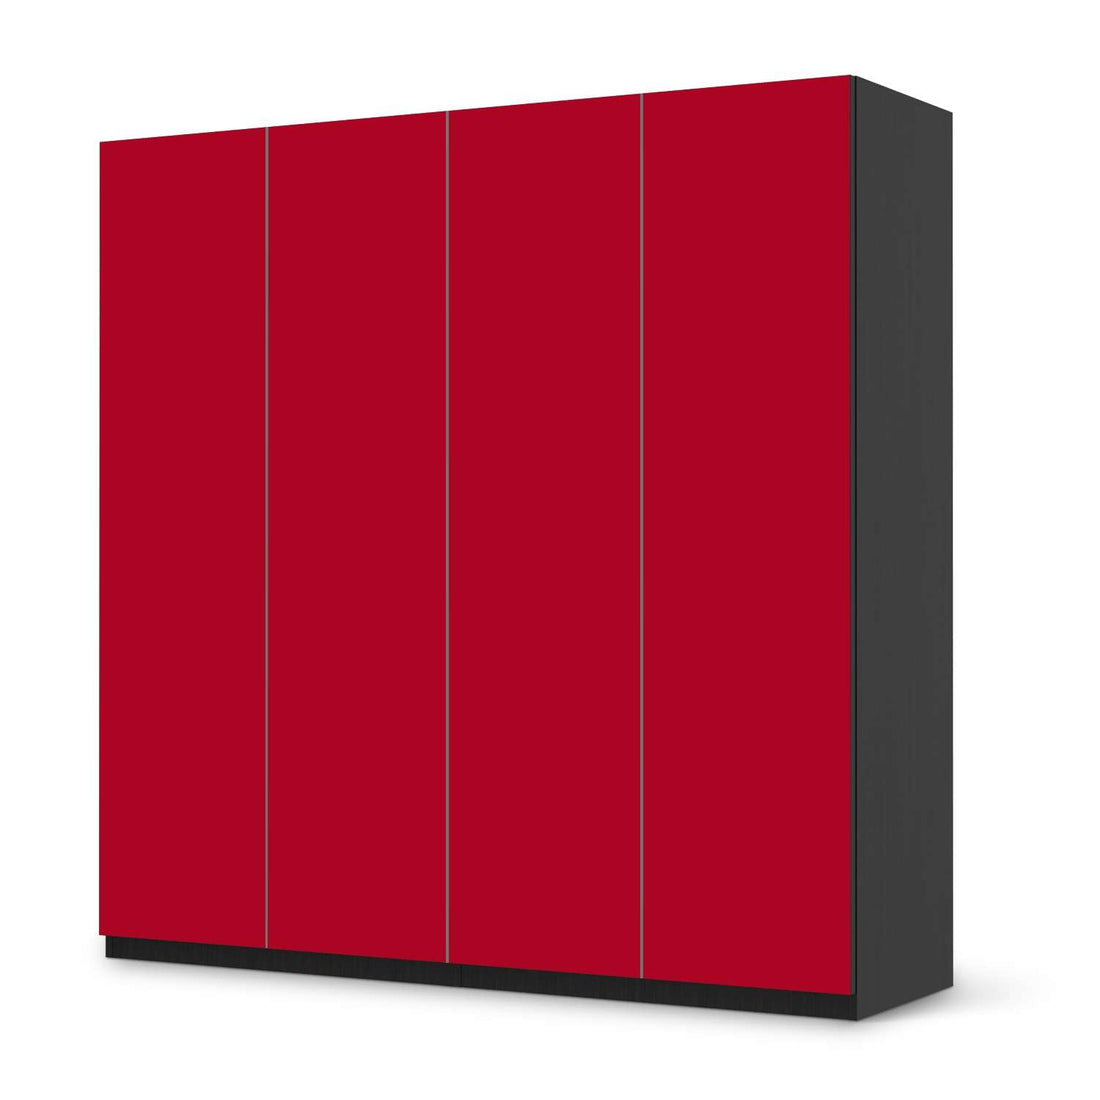 Klebefolie für Schränke Rot Dark - IKEA Pax Schrank 201 cm Höhe - 4 Türen - schwarz